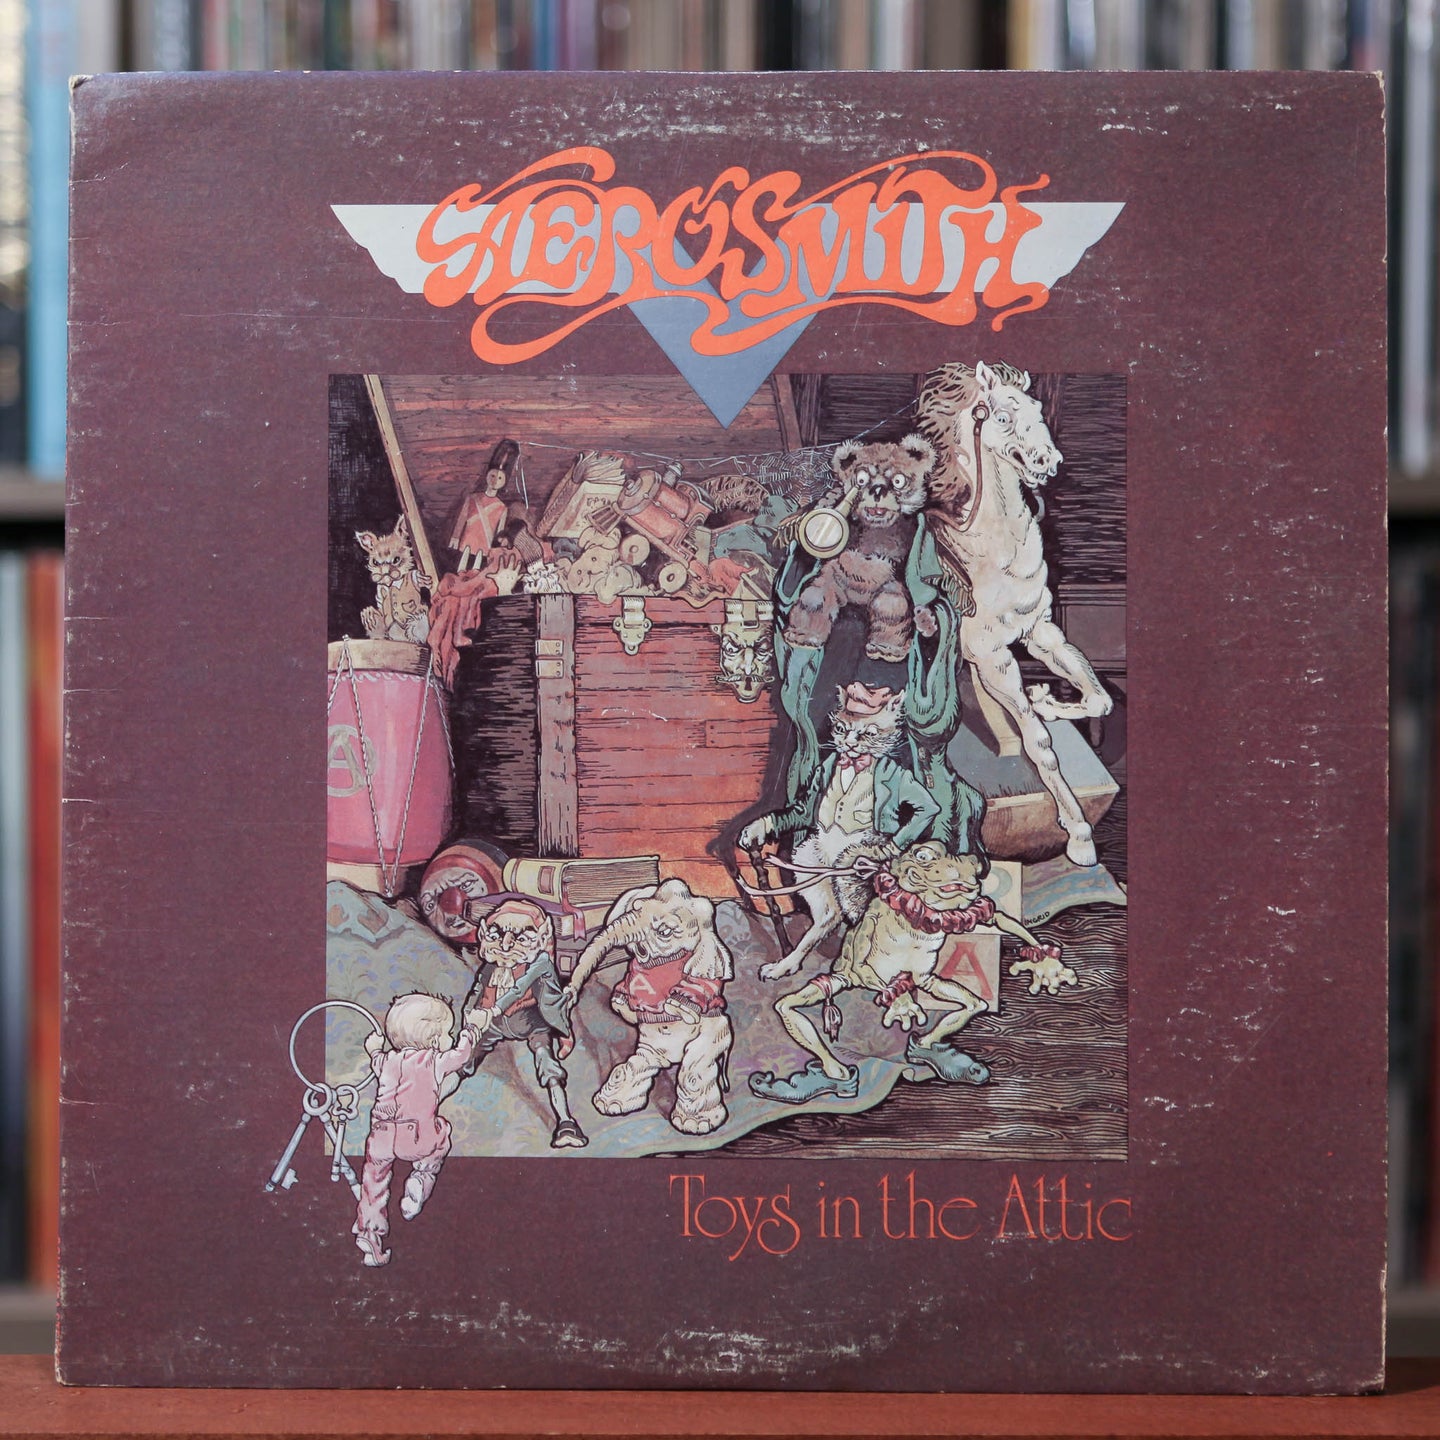 Aerosmith - Toys In The Attic - 1975 CBS, VG/VG